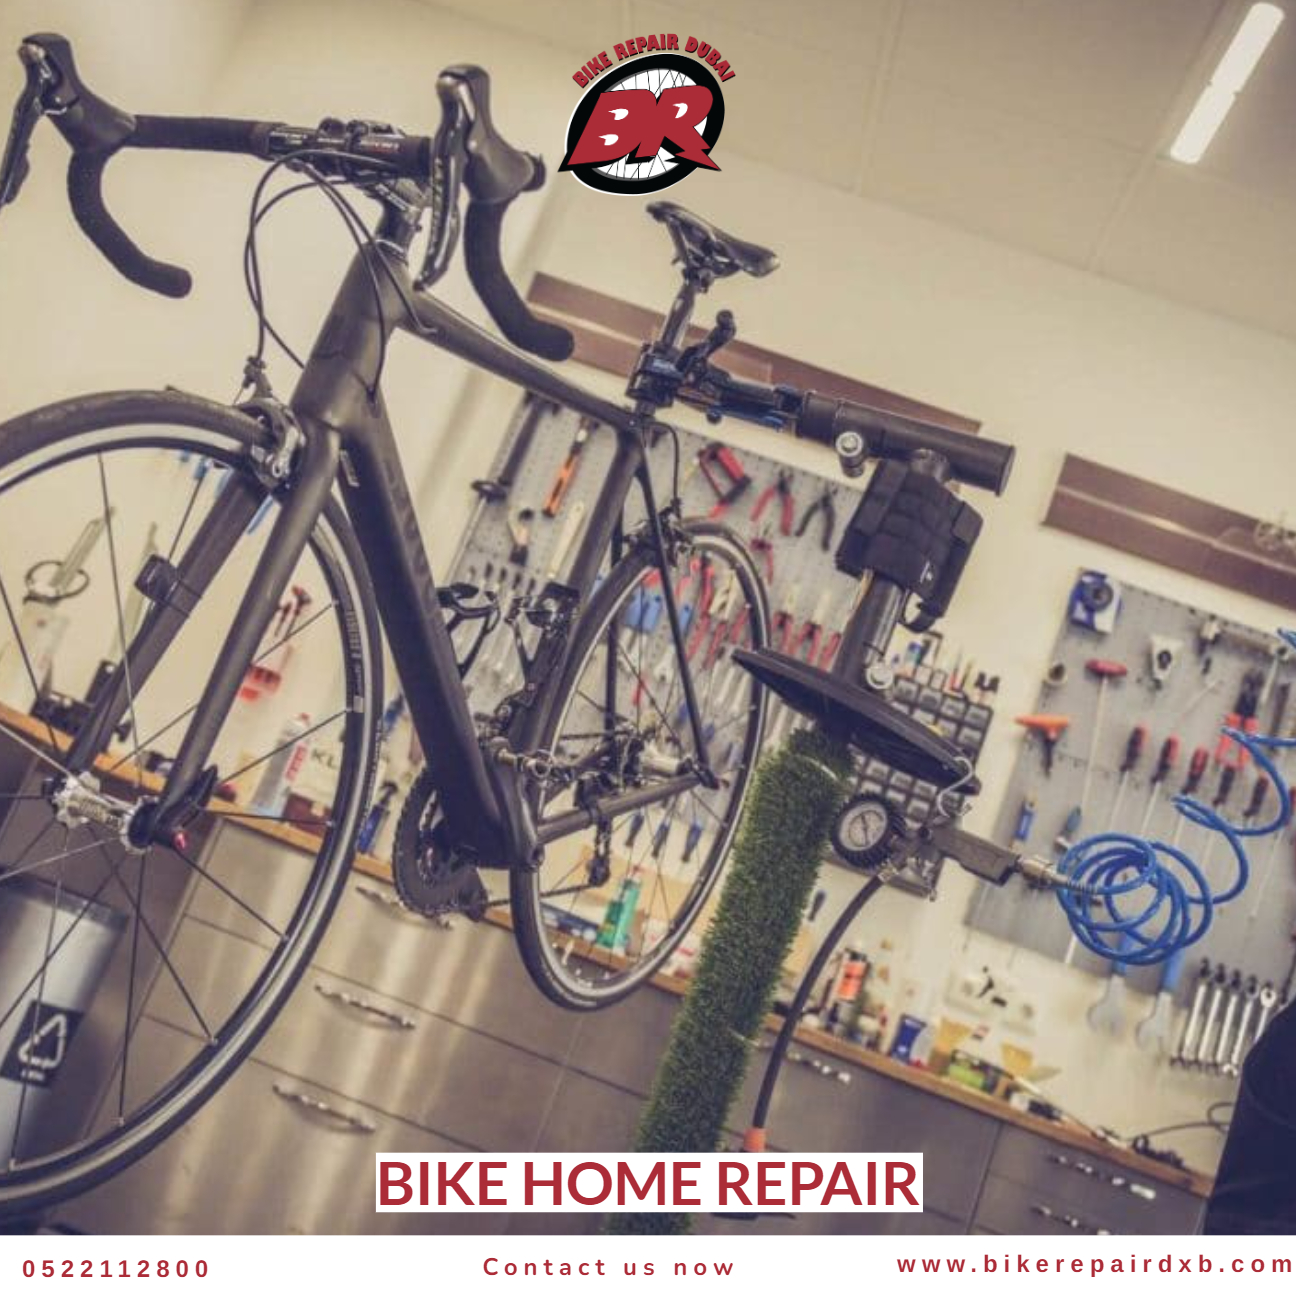 Bike home repair